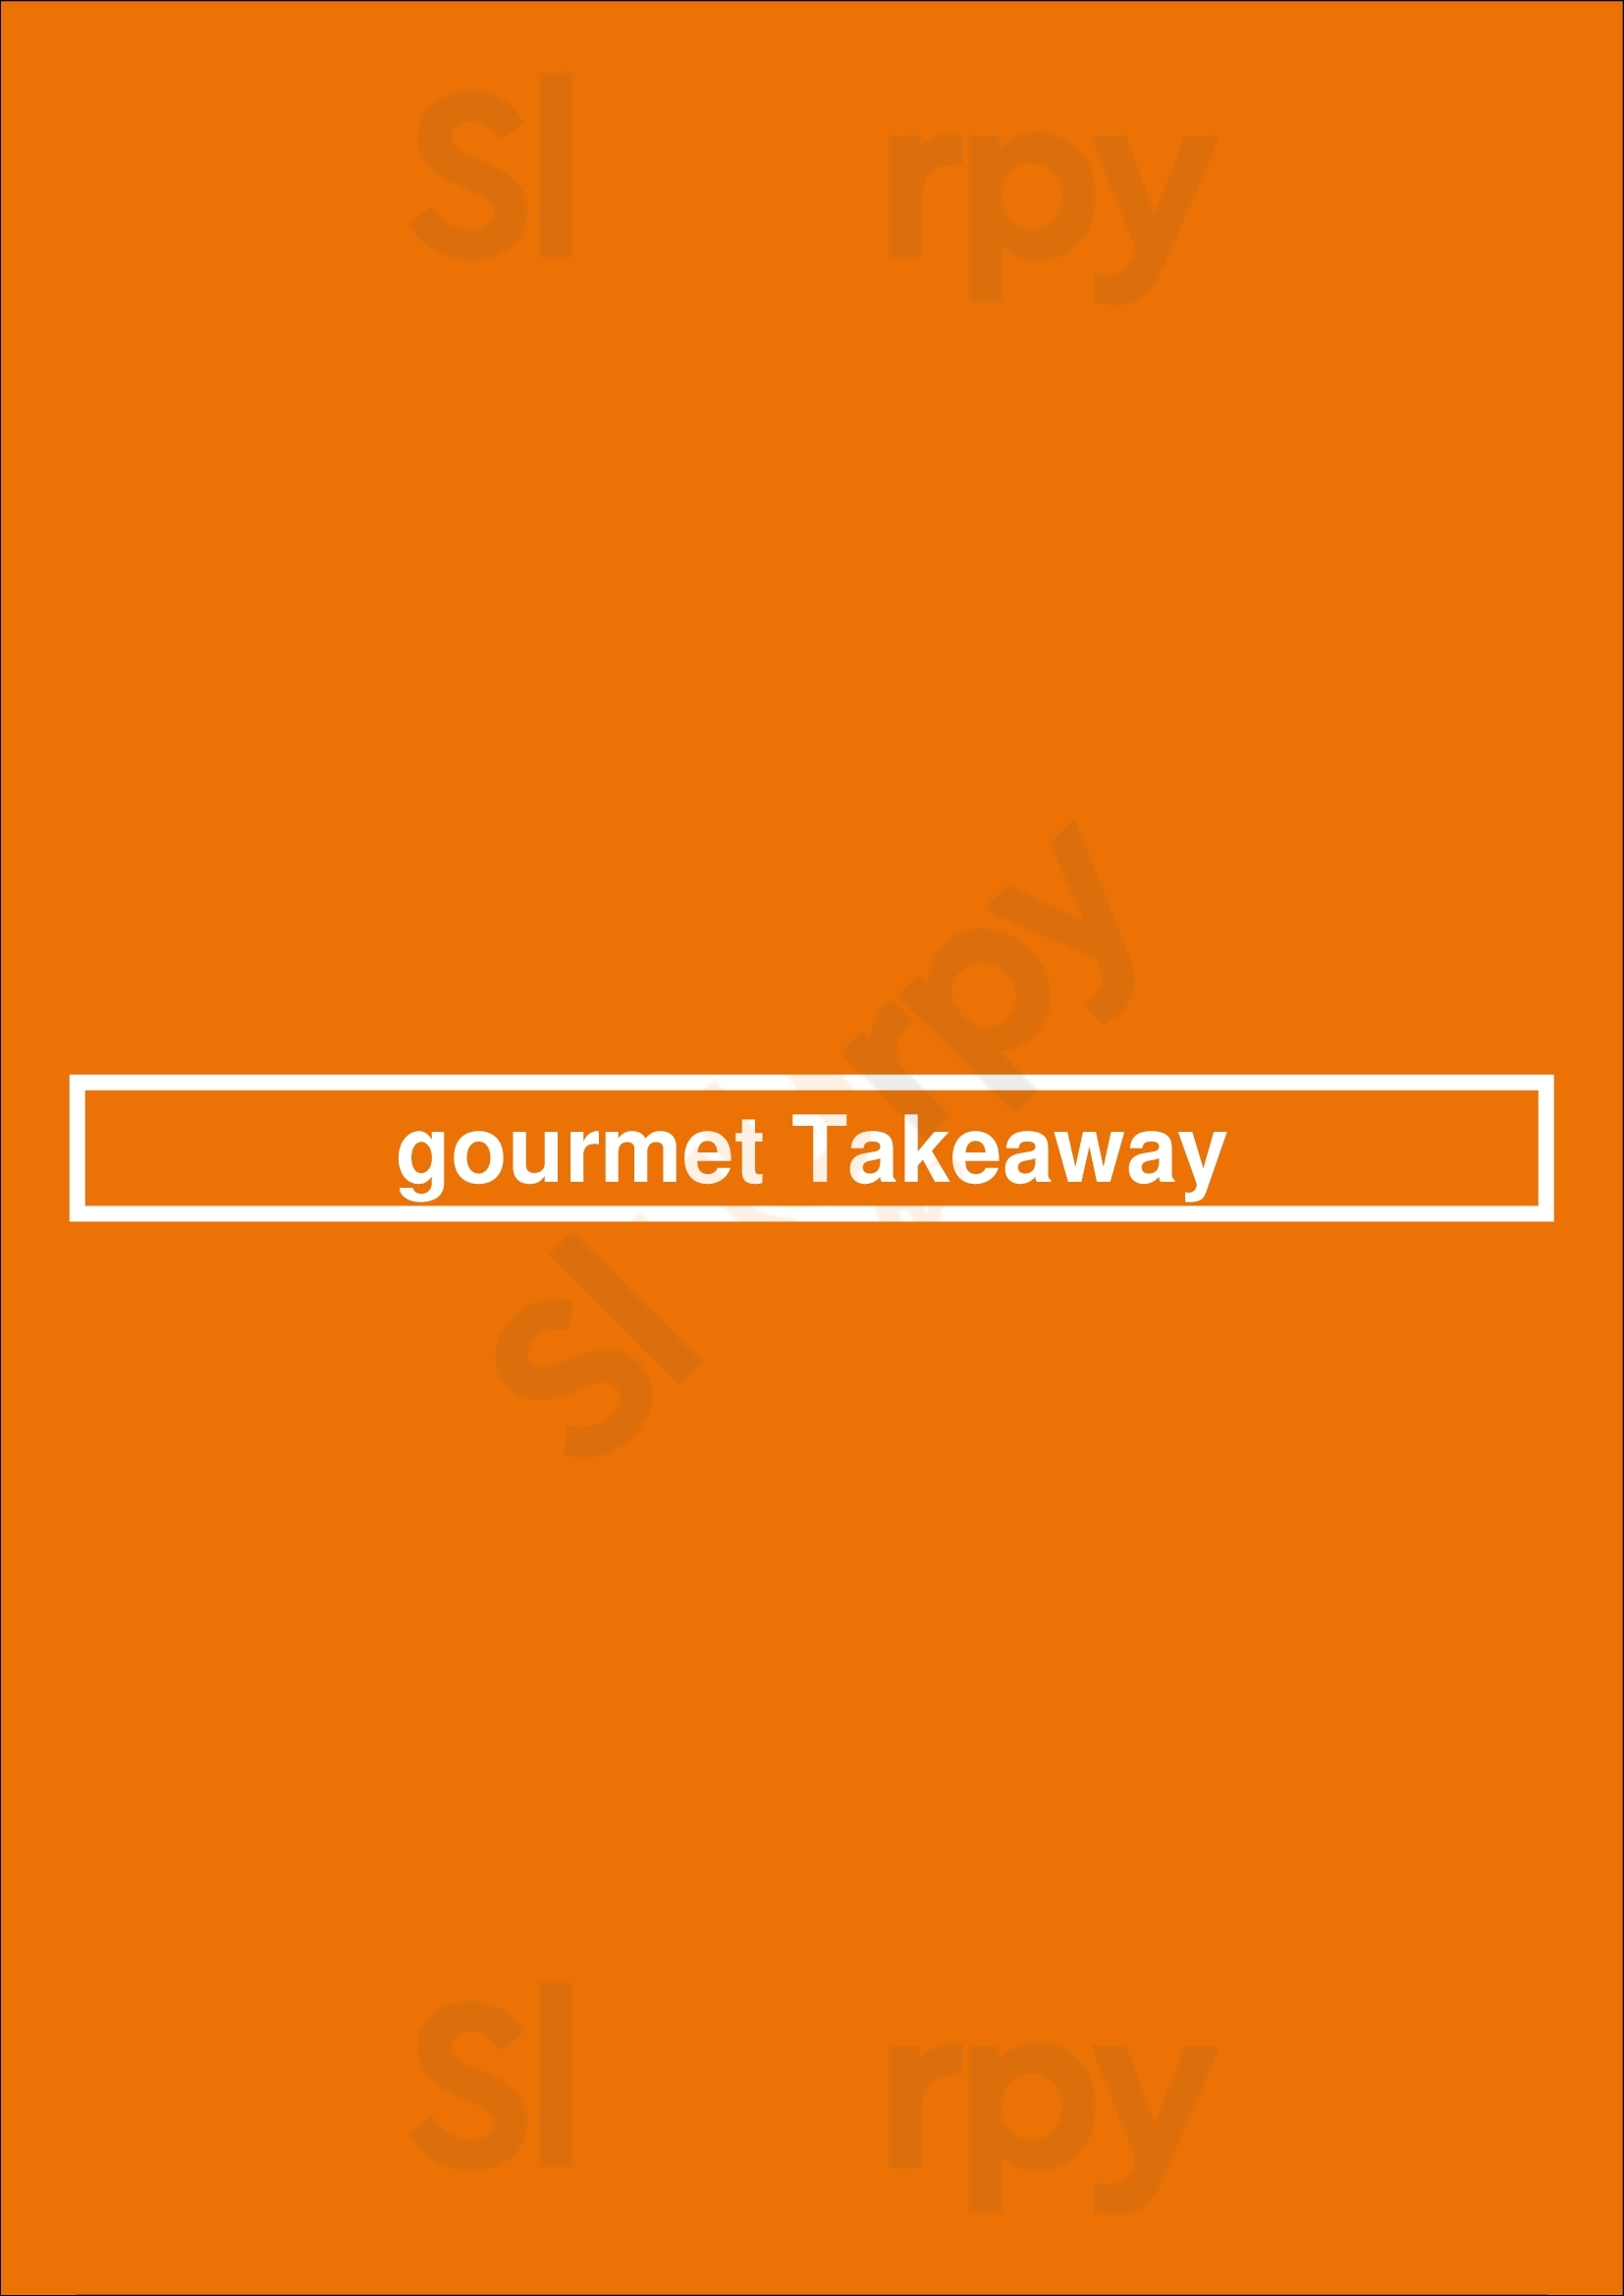 Gourmet Takeaway Redcar Menu - 1